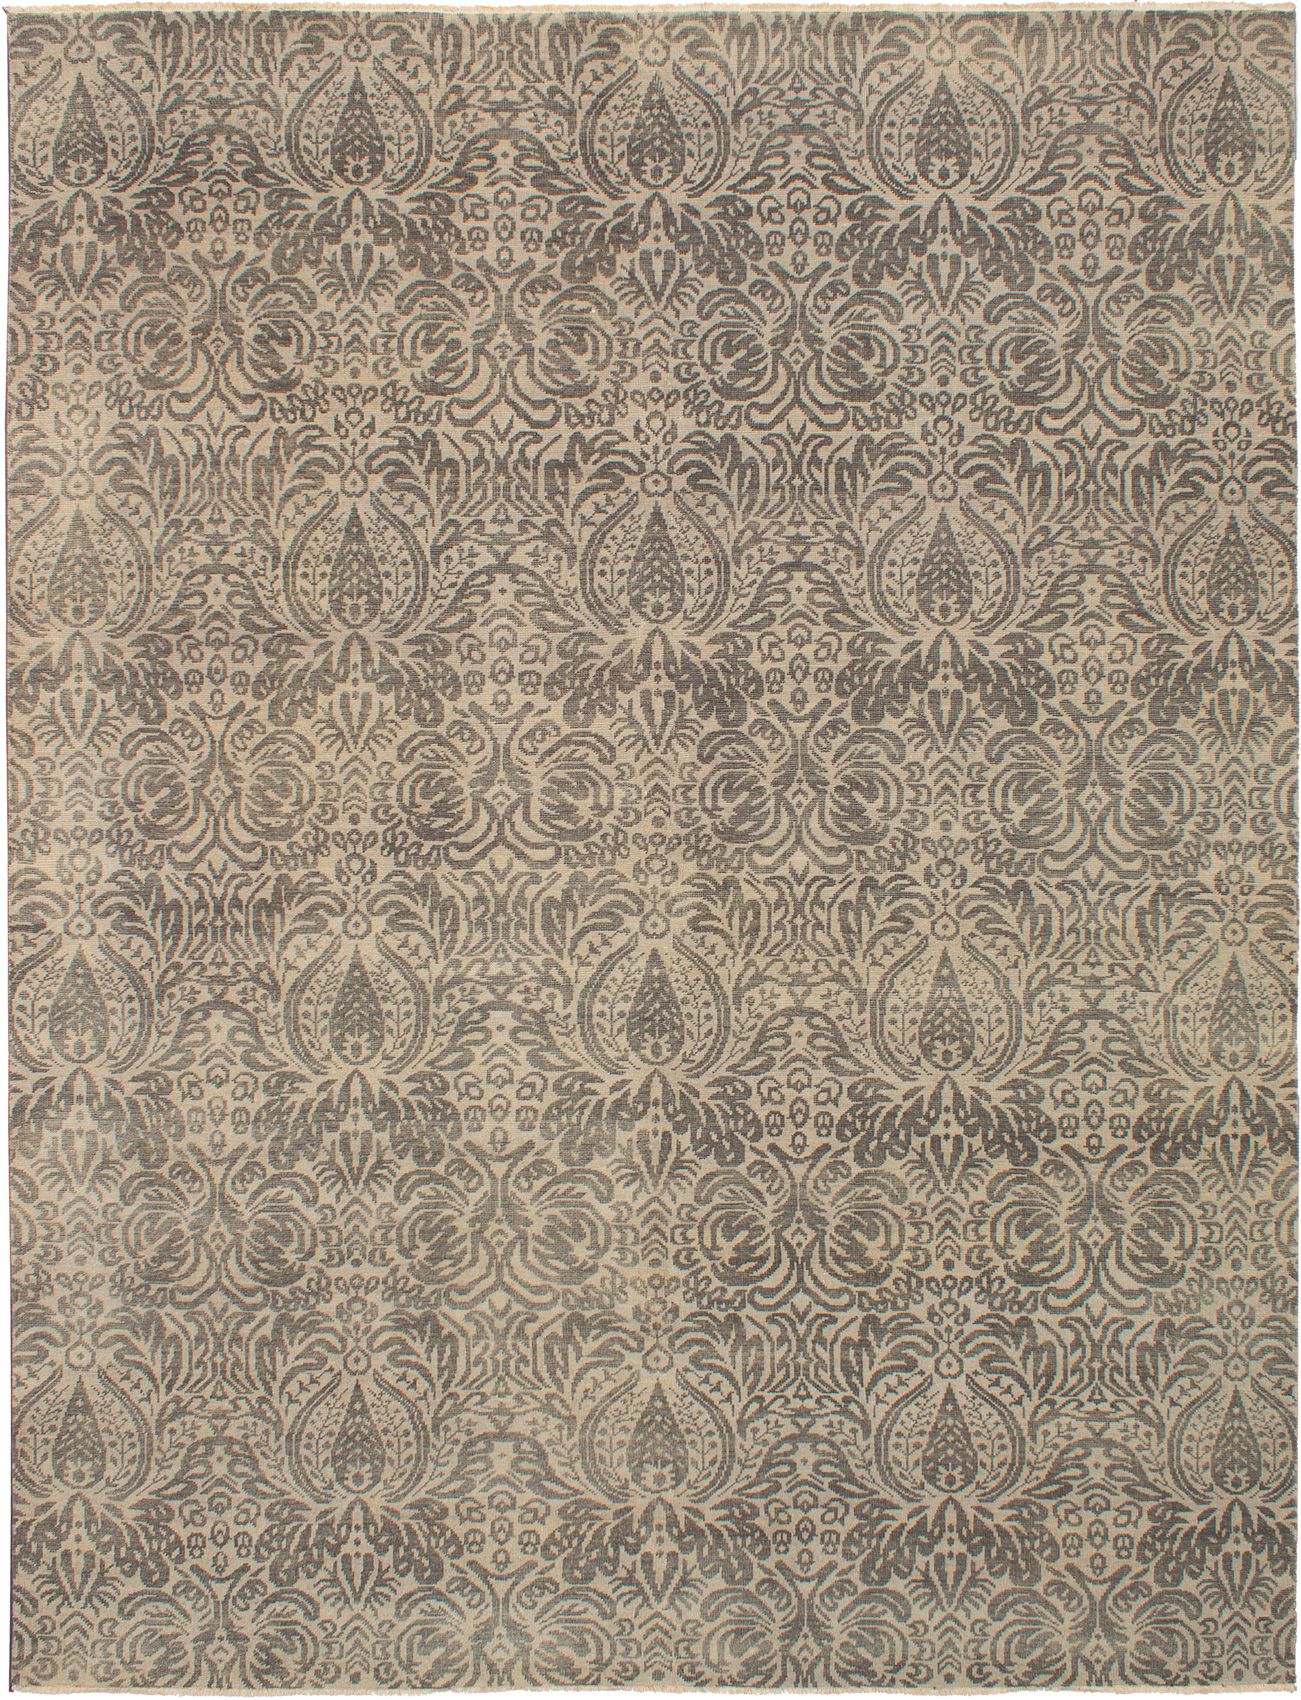 Hand-knotted Finest Ushak Light Khaki Wool Rug 9'0" x 11'9" Size: 9'0" x 11'9"  